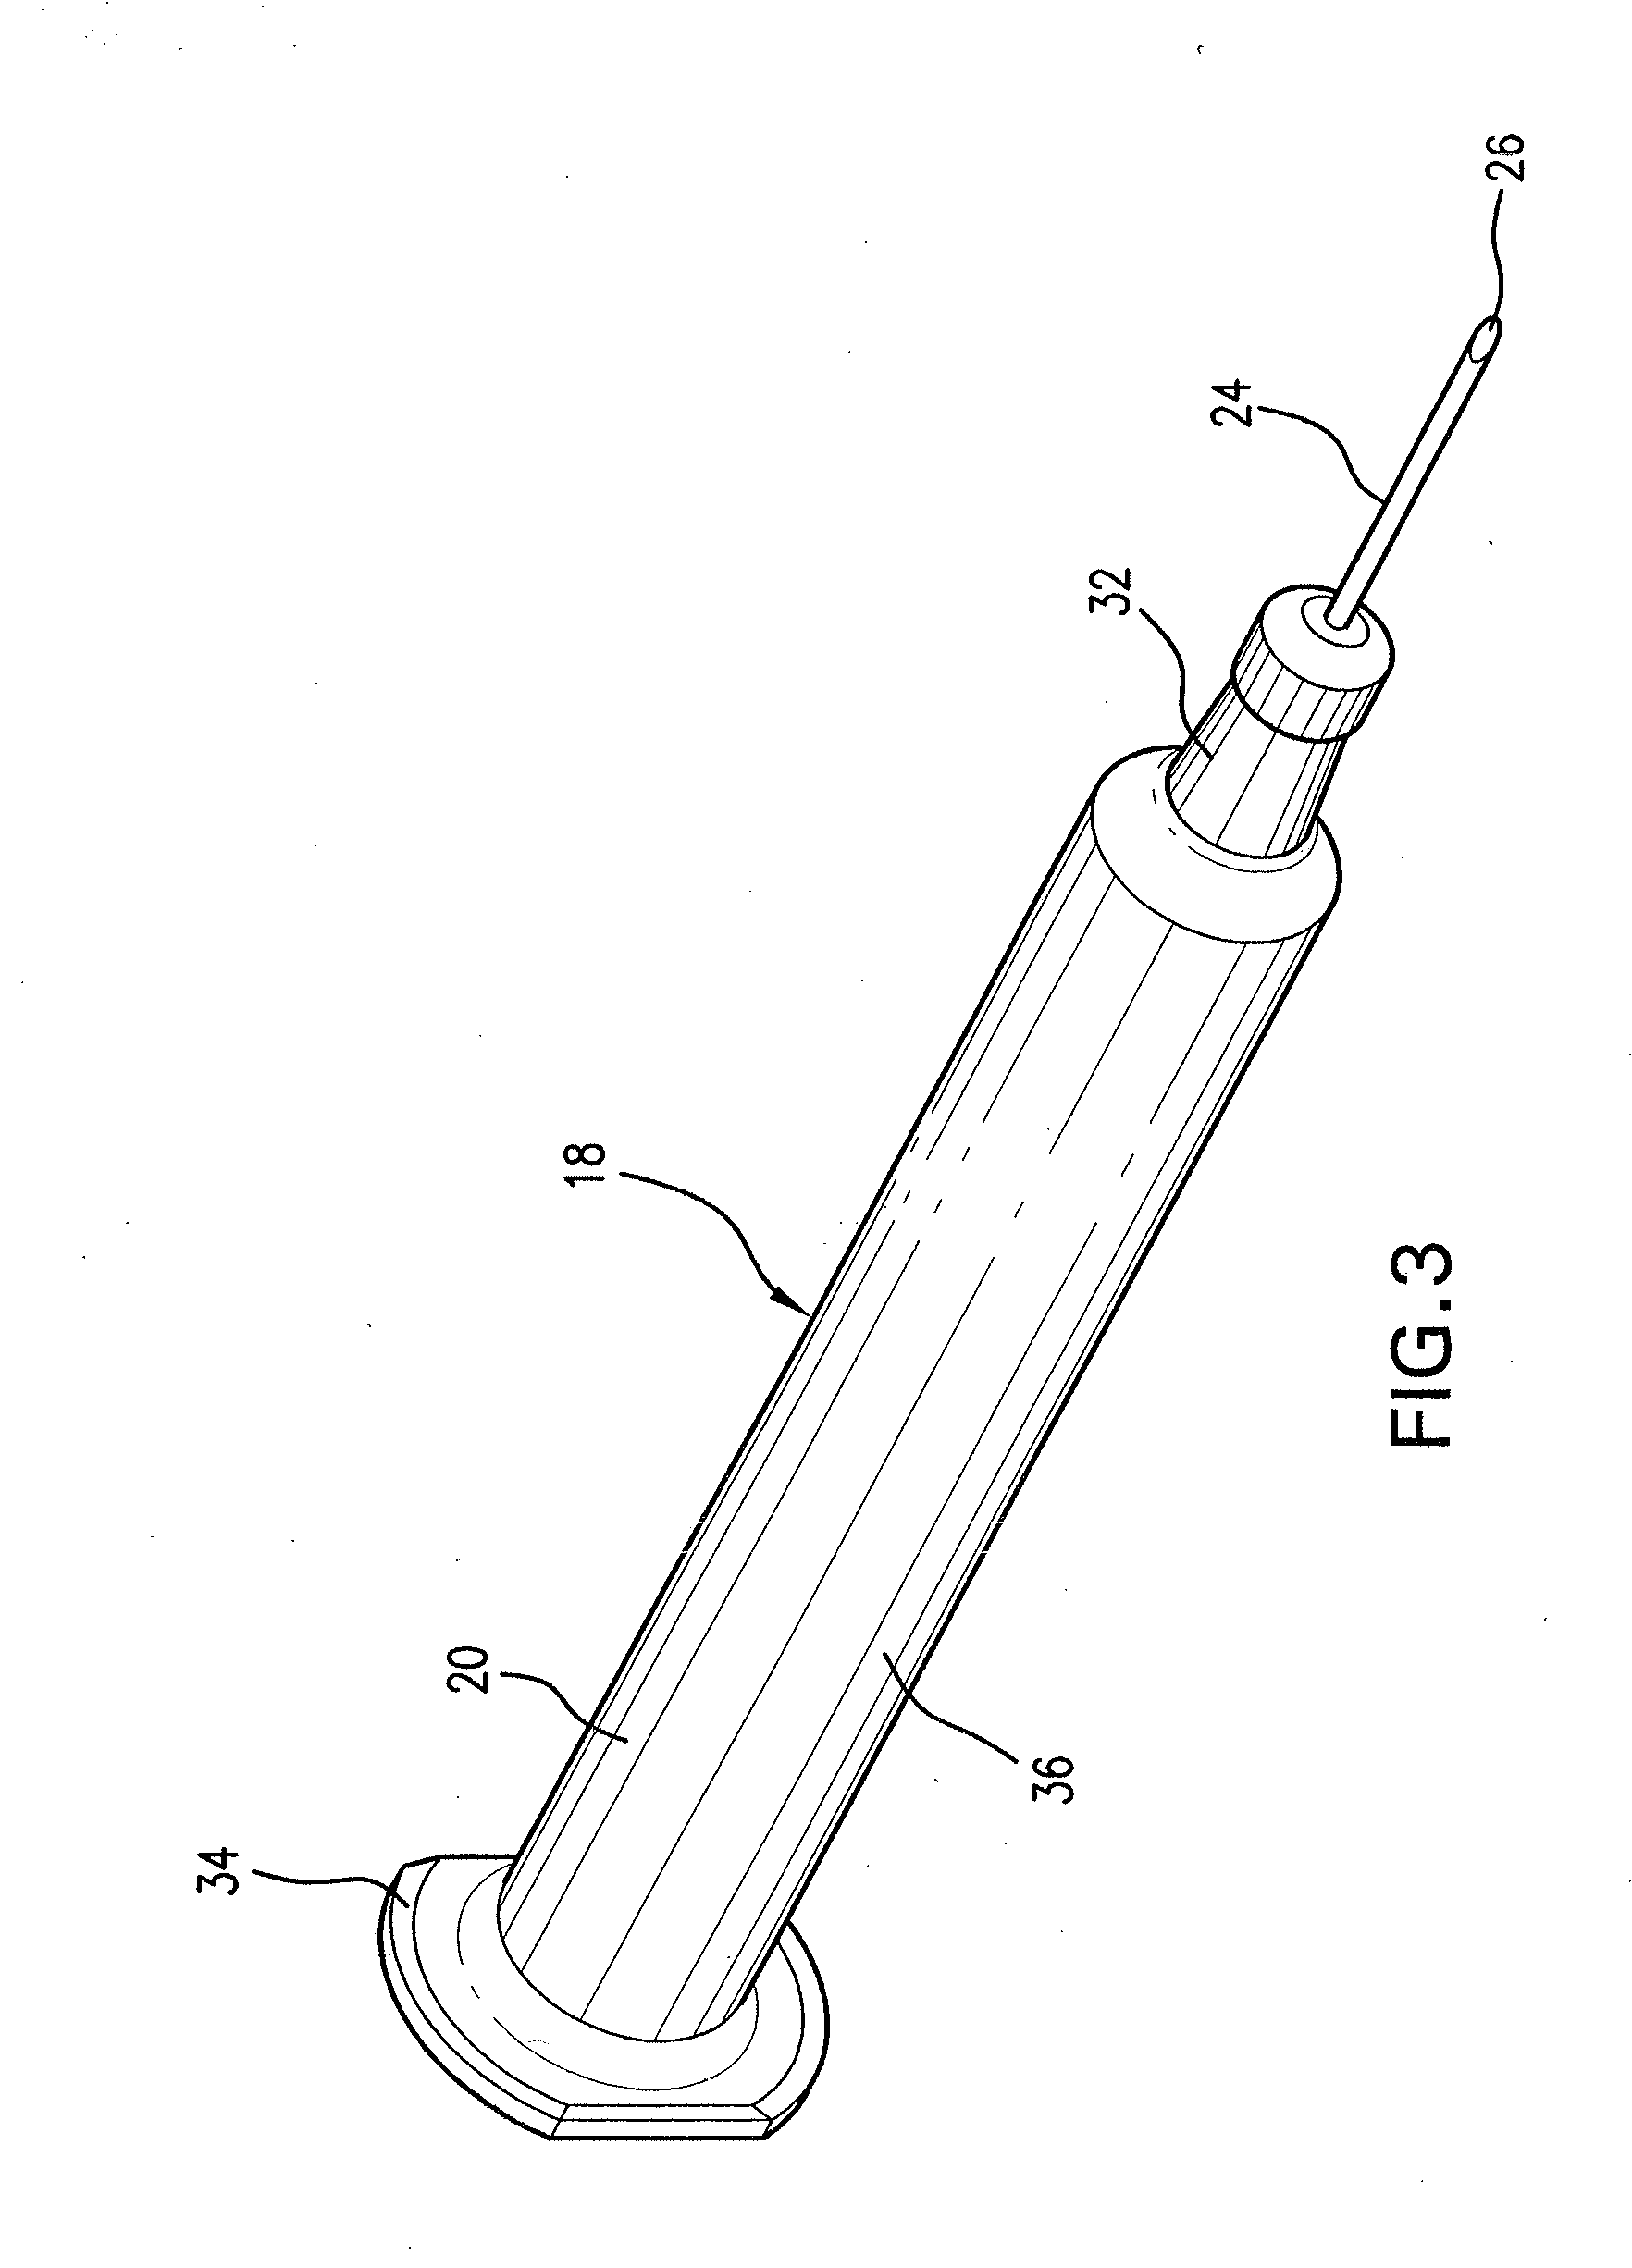 Prefilled syringe jet injector